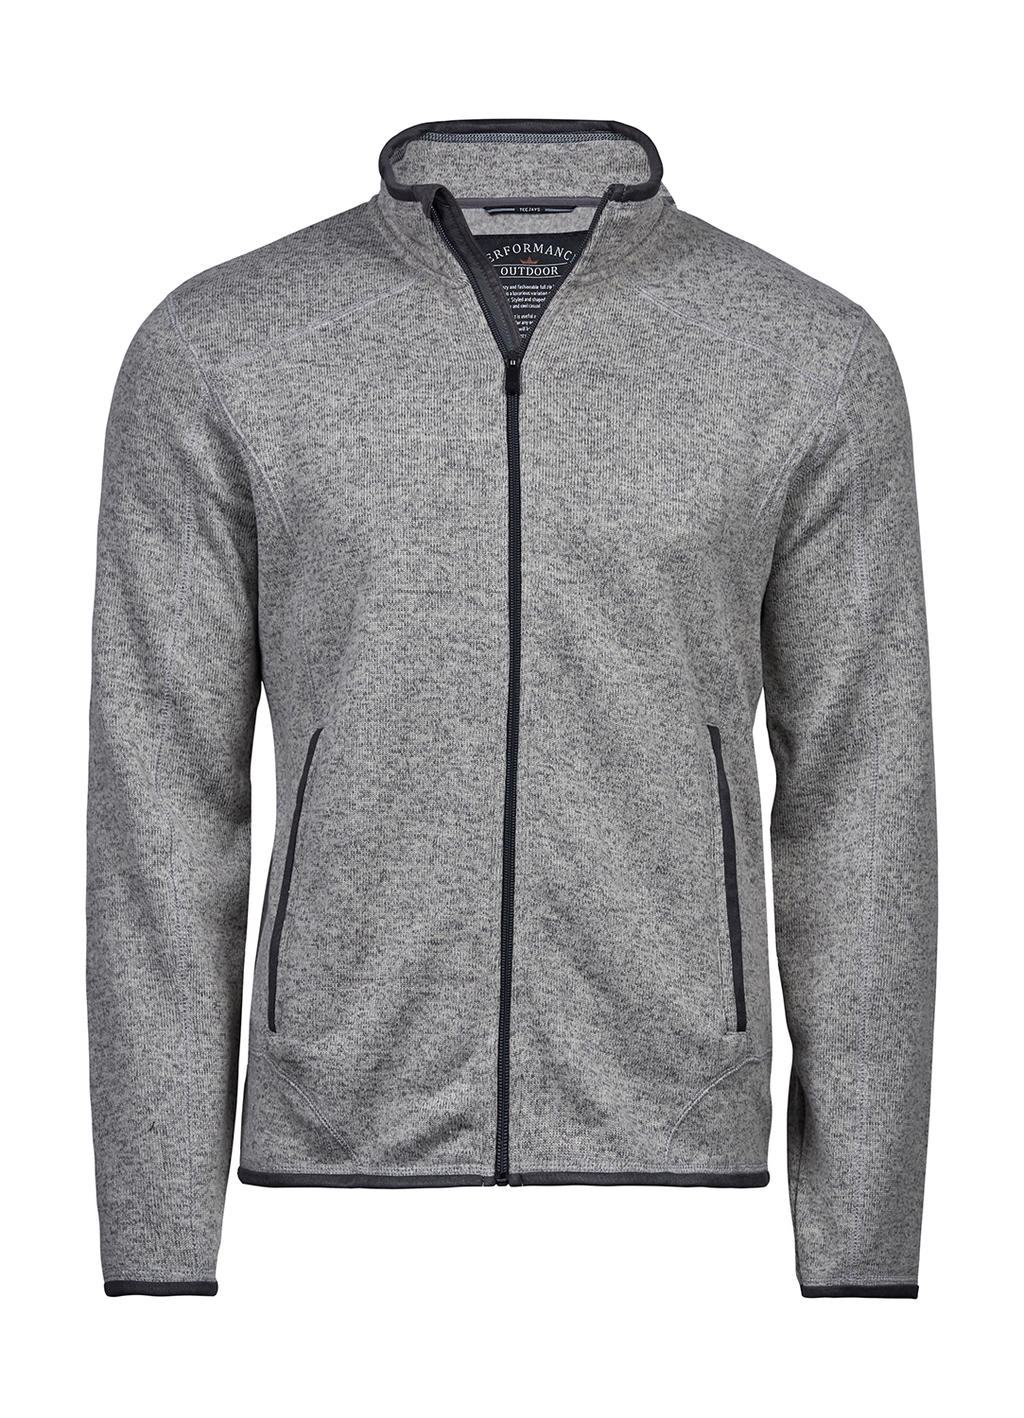  Outdoor Fleece Jacket in Farbe Grey Melange